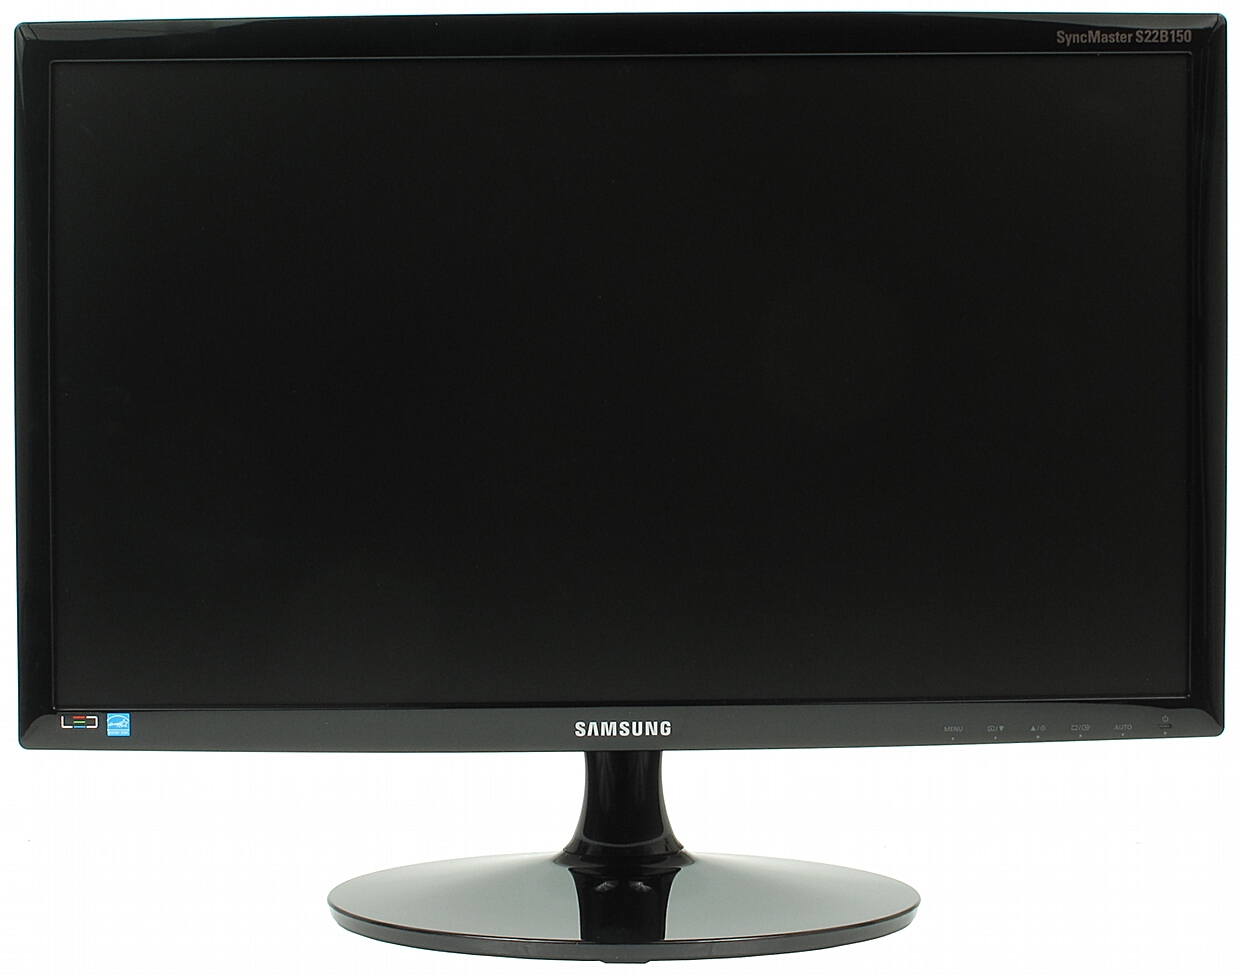 SAMSUNG MONITOR VGA TFT-S22B150N 21.5 " - LCD Monitors - Delta